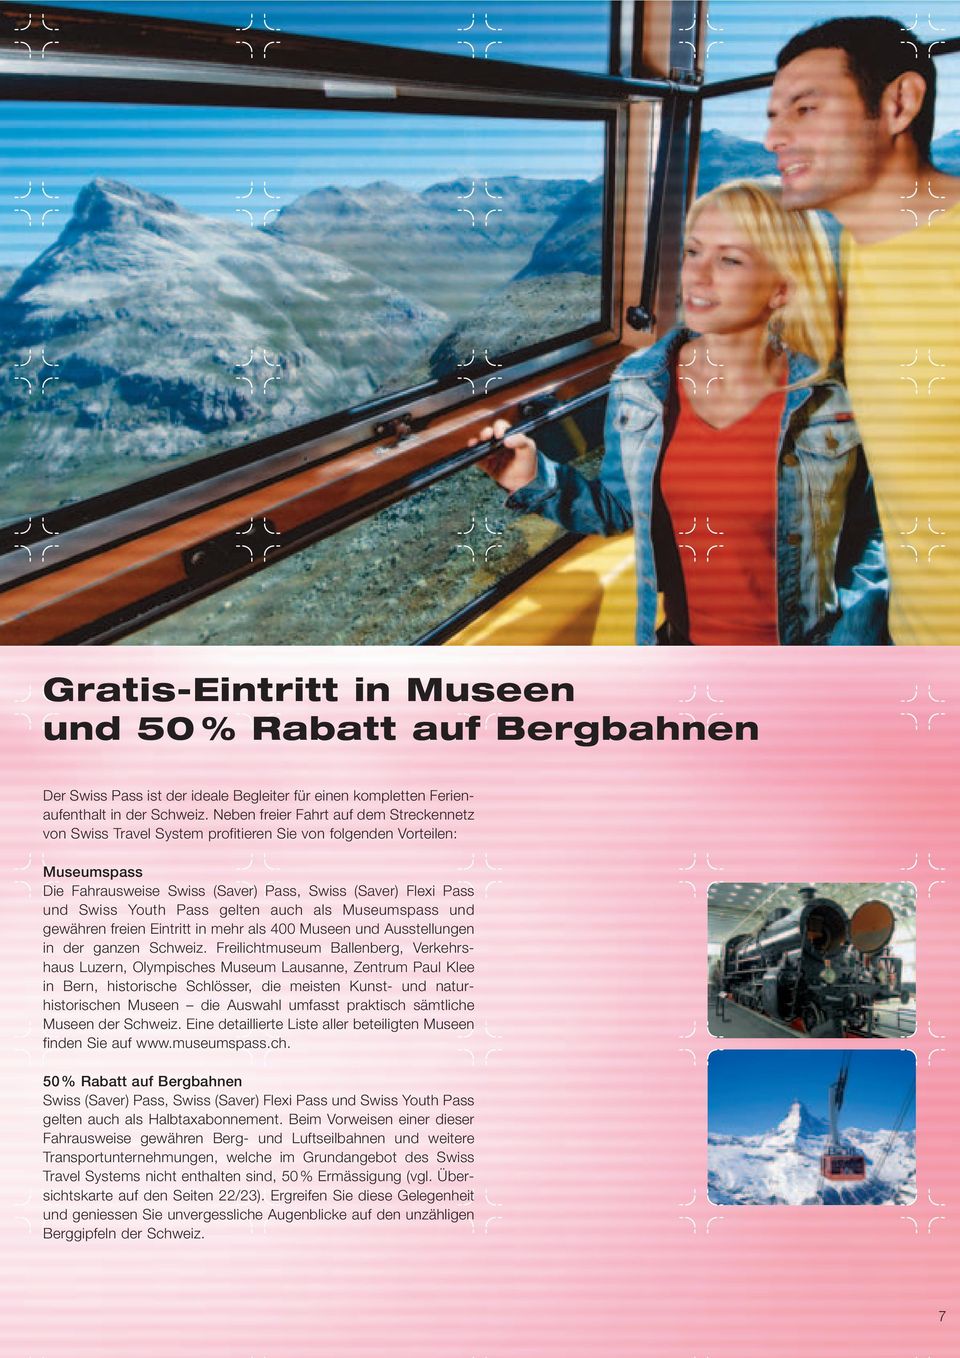 gelten auch als Museumspass und gewähren freien Eintritt in mehr als 400 Museen und Ausstellungen in der ganzen Schweiz.